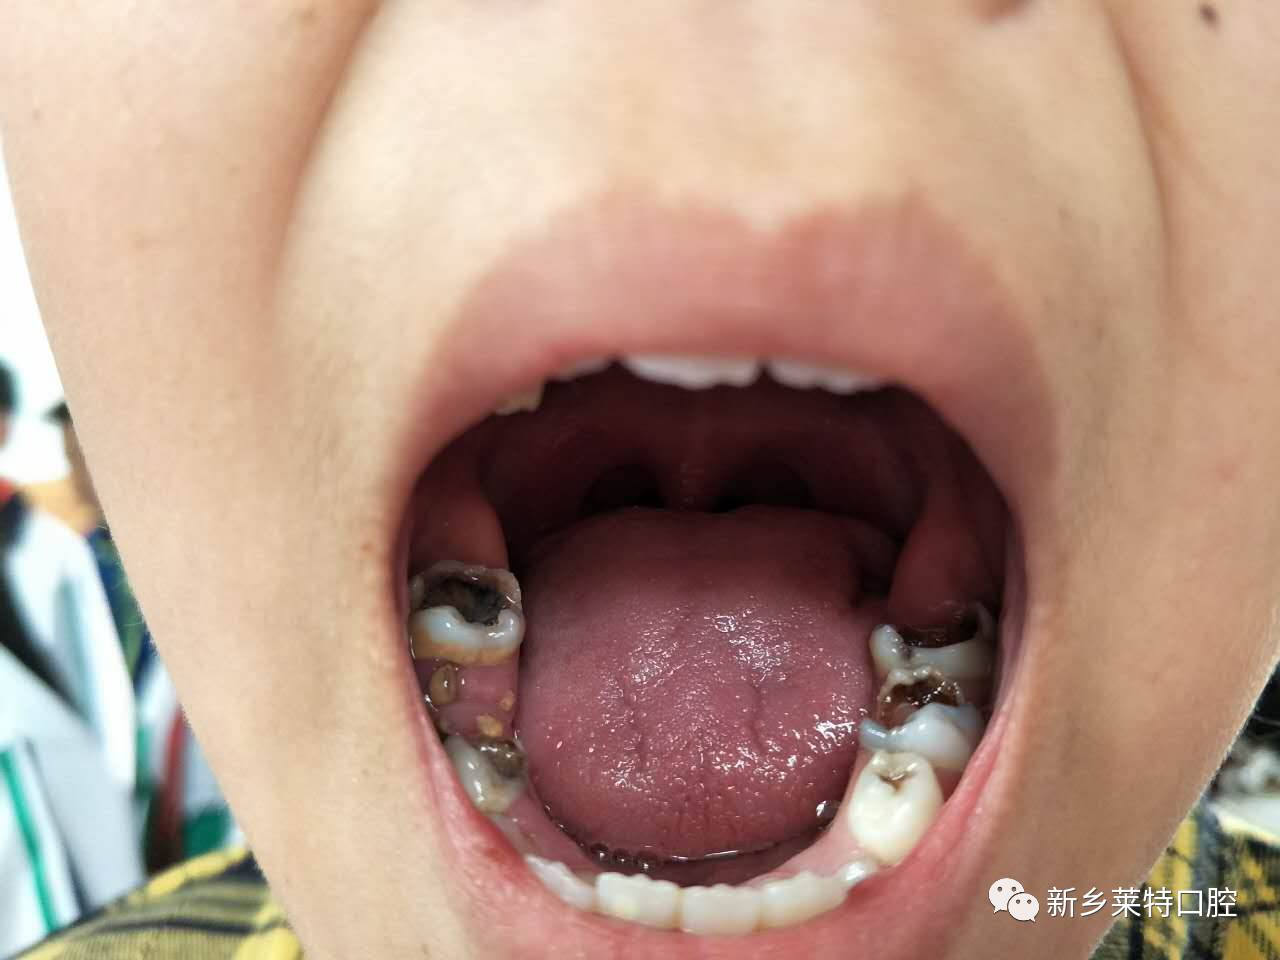 六龄齿,是在孩子6岁左右长出的第一颗恒磨牙,总共四颗,一生只长一次